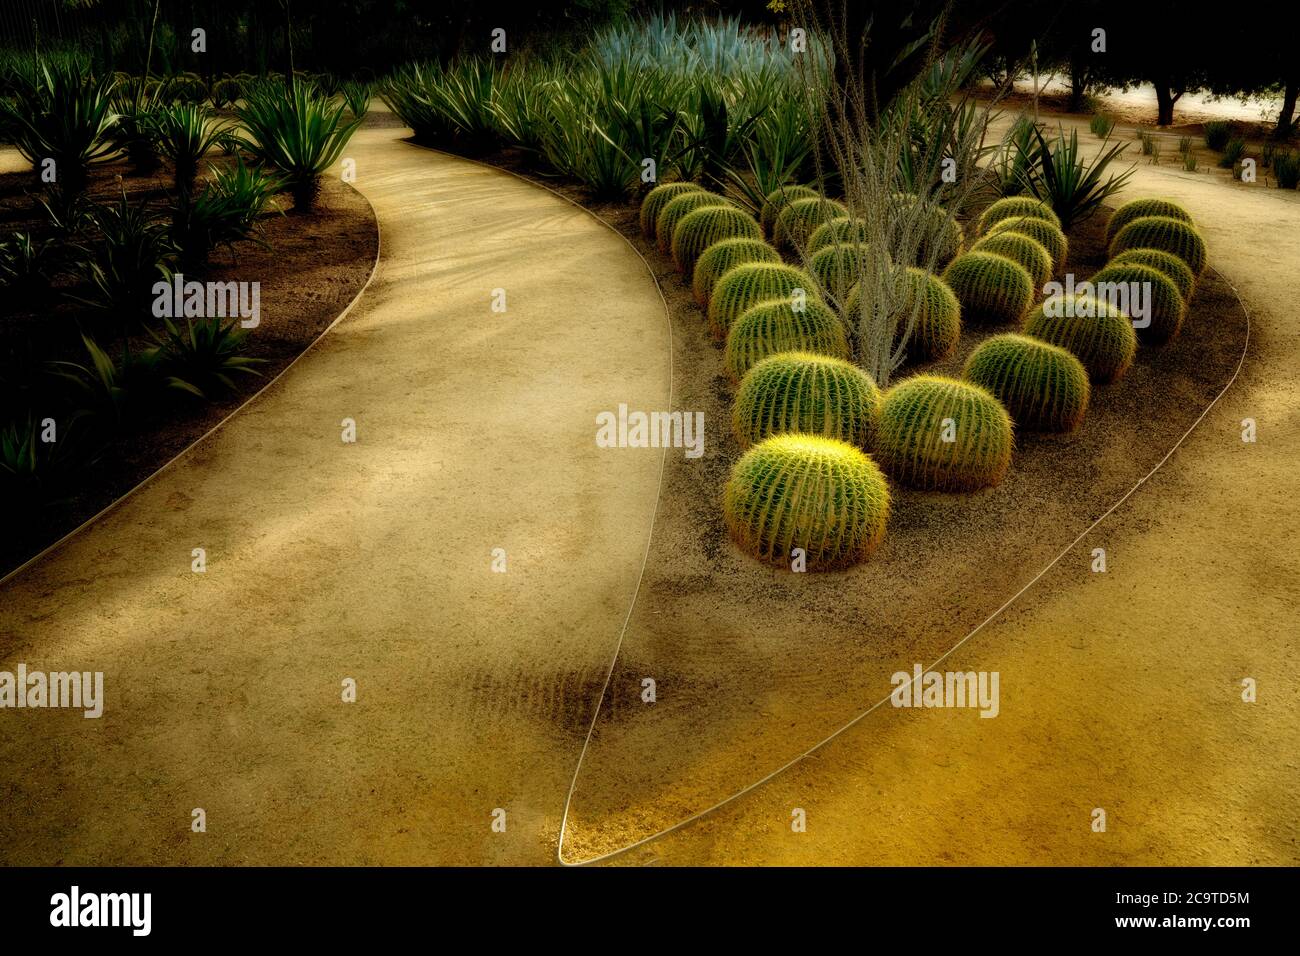 Jardin de cactus de tonneau. Jardins Sunnylands. Palm Springs, Californie Banque D'Images